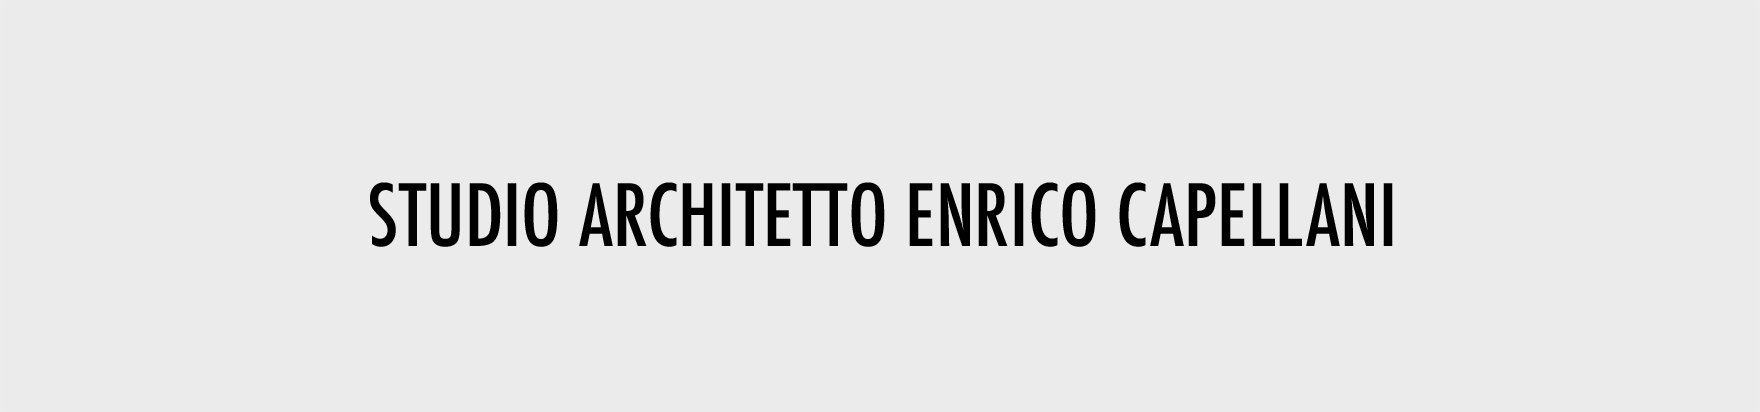 Home-ARCHITETTO ENRICO CAPELLANI